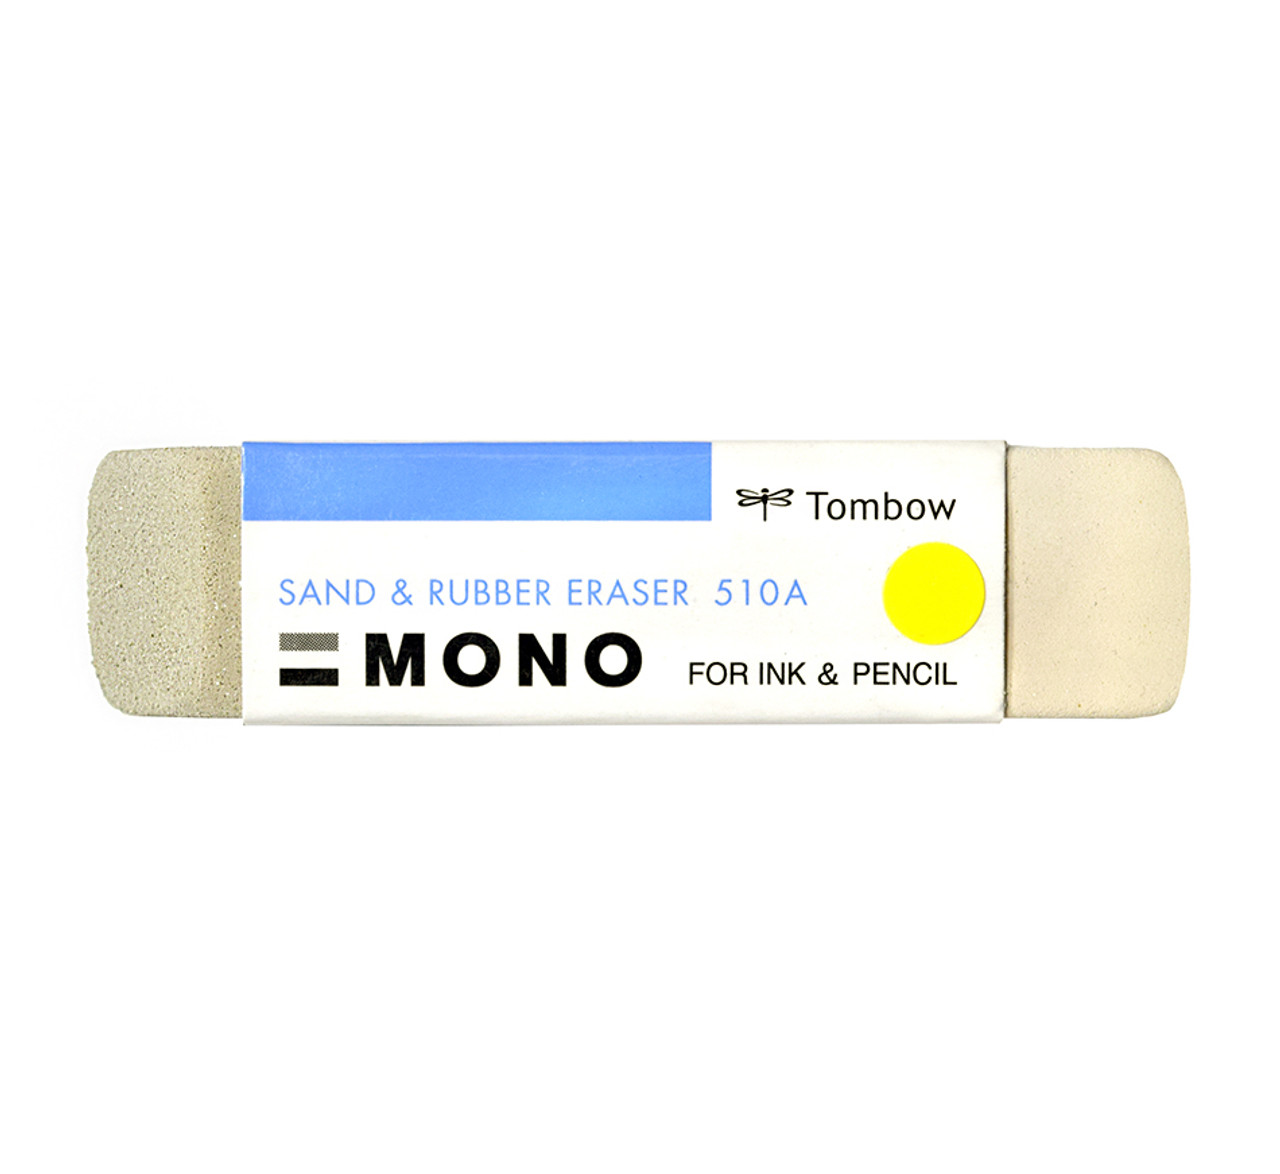 Eraser Ink Mono Japan Sand eraser